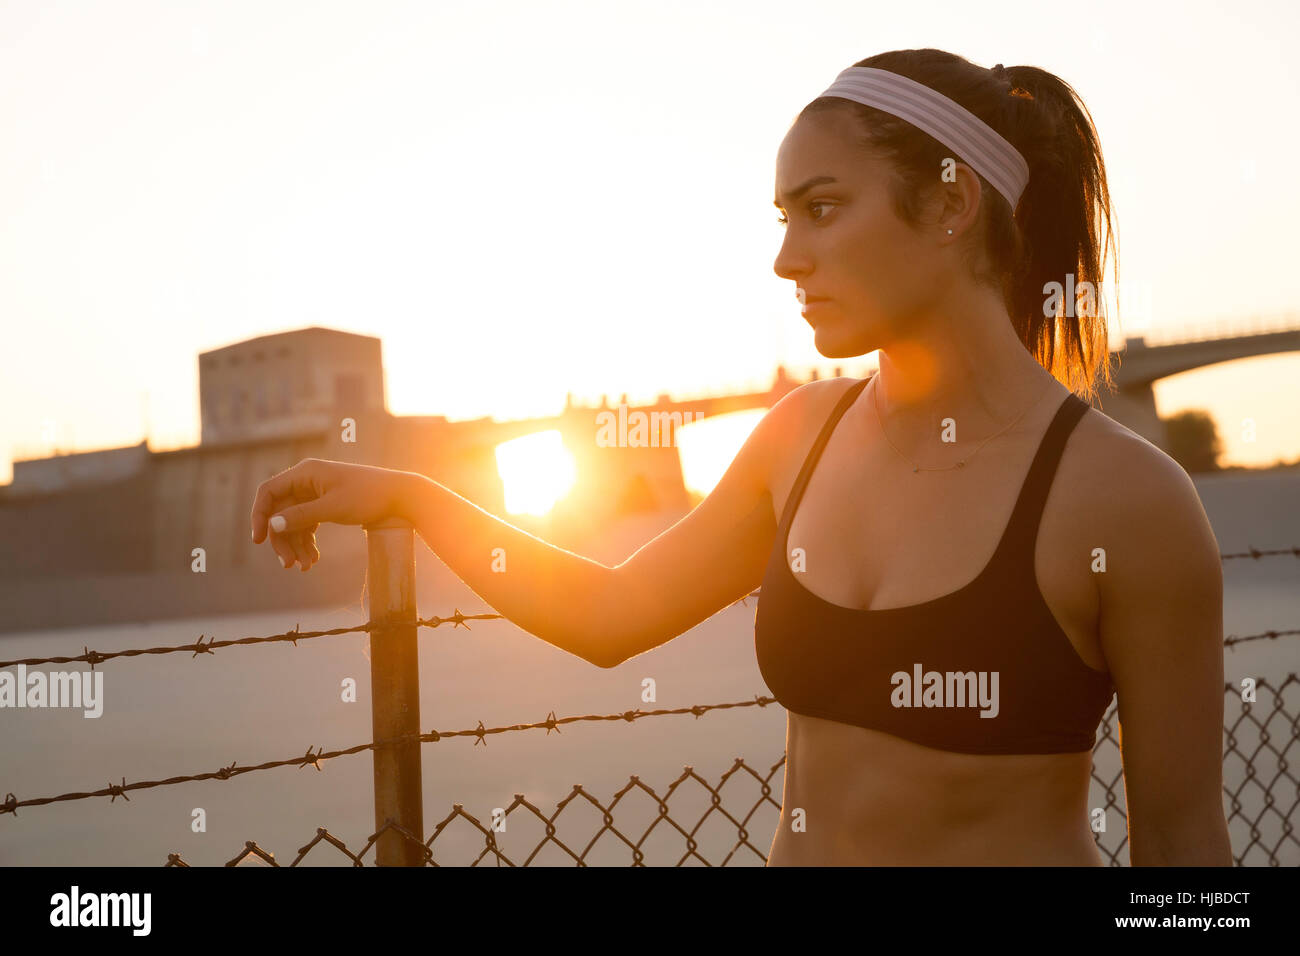 La rêverie de l'athlète féminine par grillage au coucher du soleil, Van Nuys, Californie, USA Banque D'Images